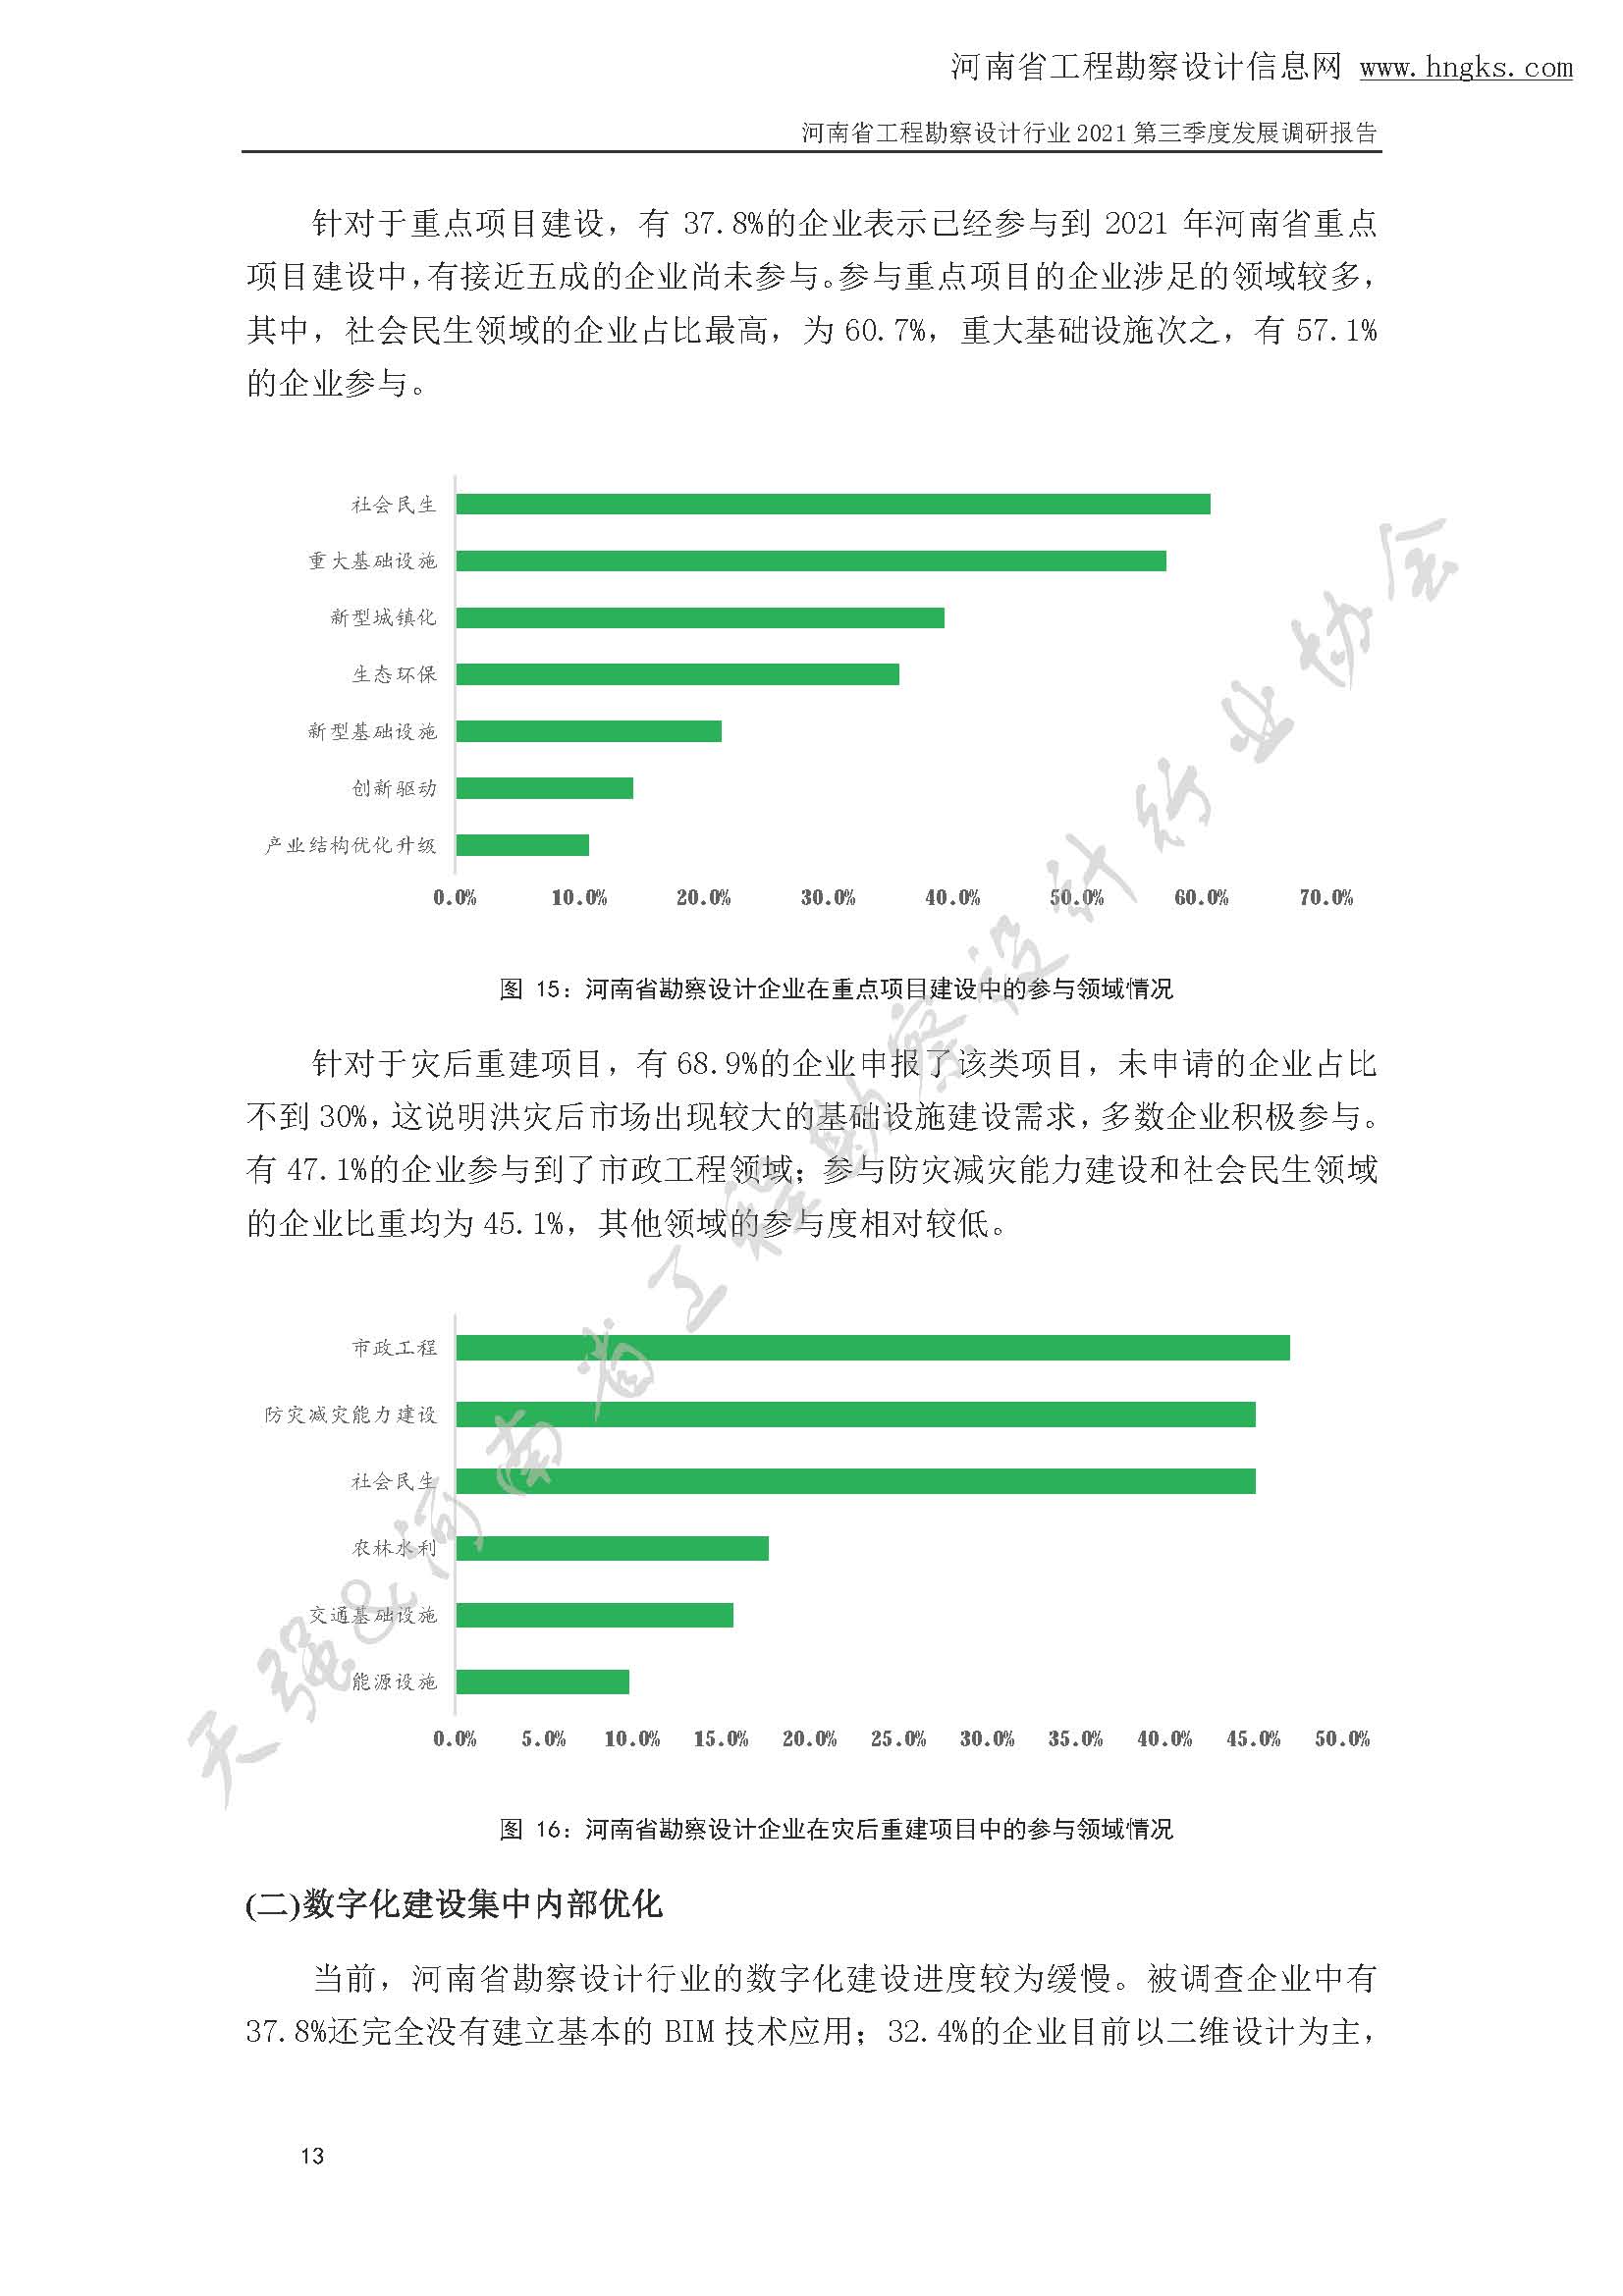 河南省工程勘察设计企业2021年第三季度发展调研报告-公开版_页面_16.jpg